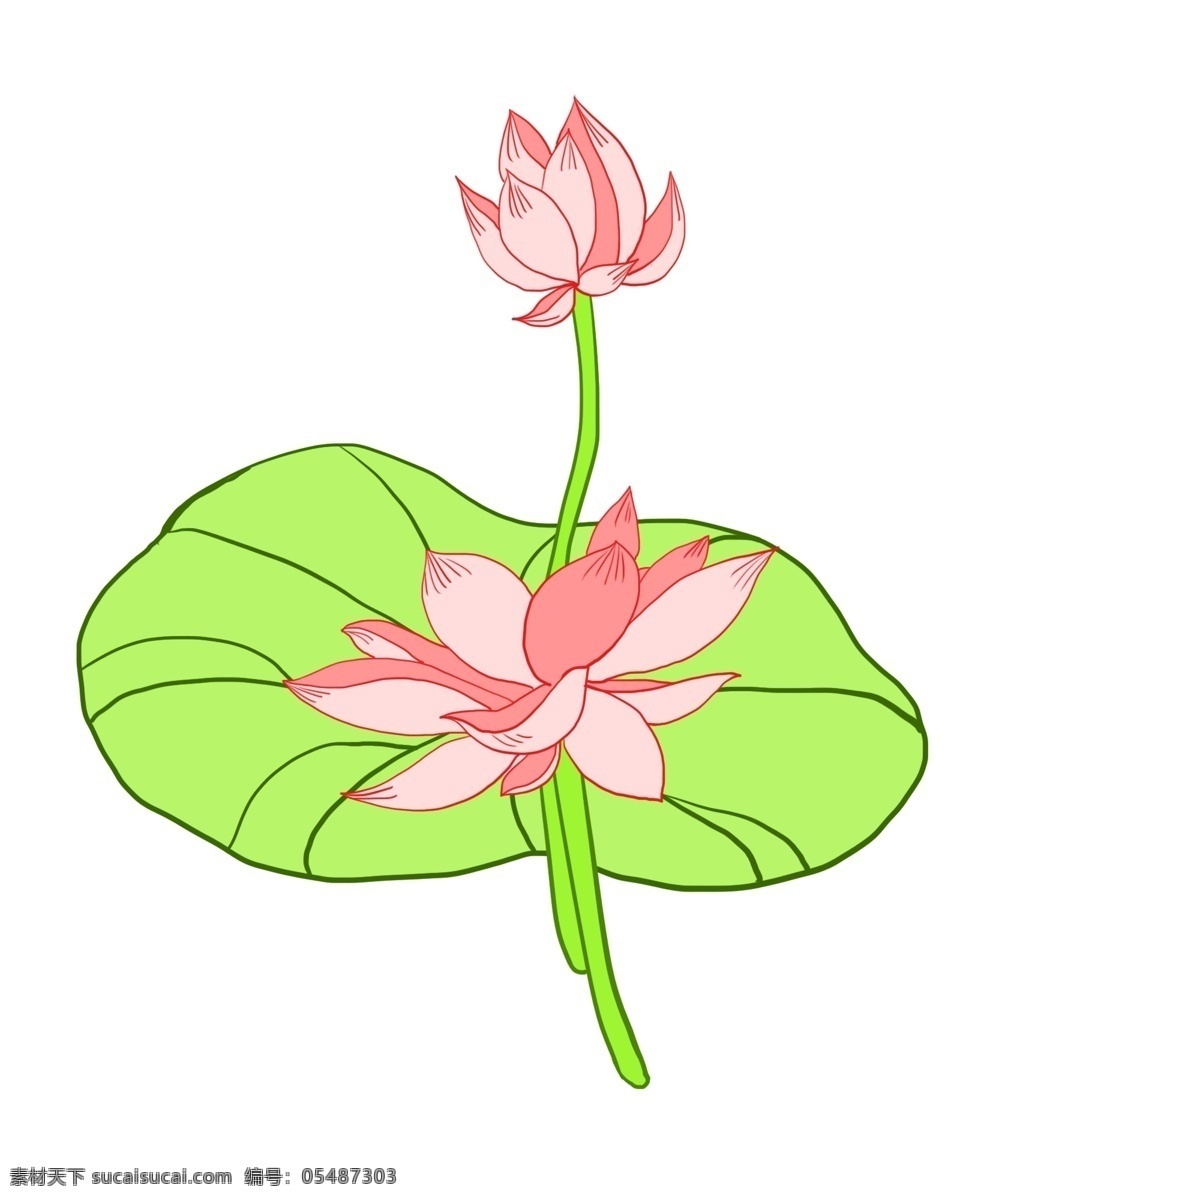 卡通 可爱 手绘 荷花 花卉 绿色 卡通荷花 卡通荷叶 叶子 绿色叶子 粉色荷花 花朵 卡通花朵 中国风荷叶